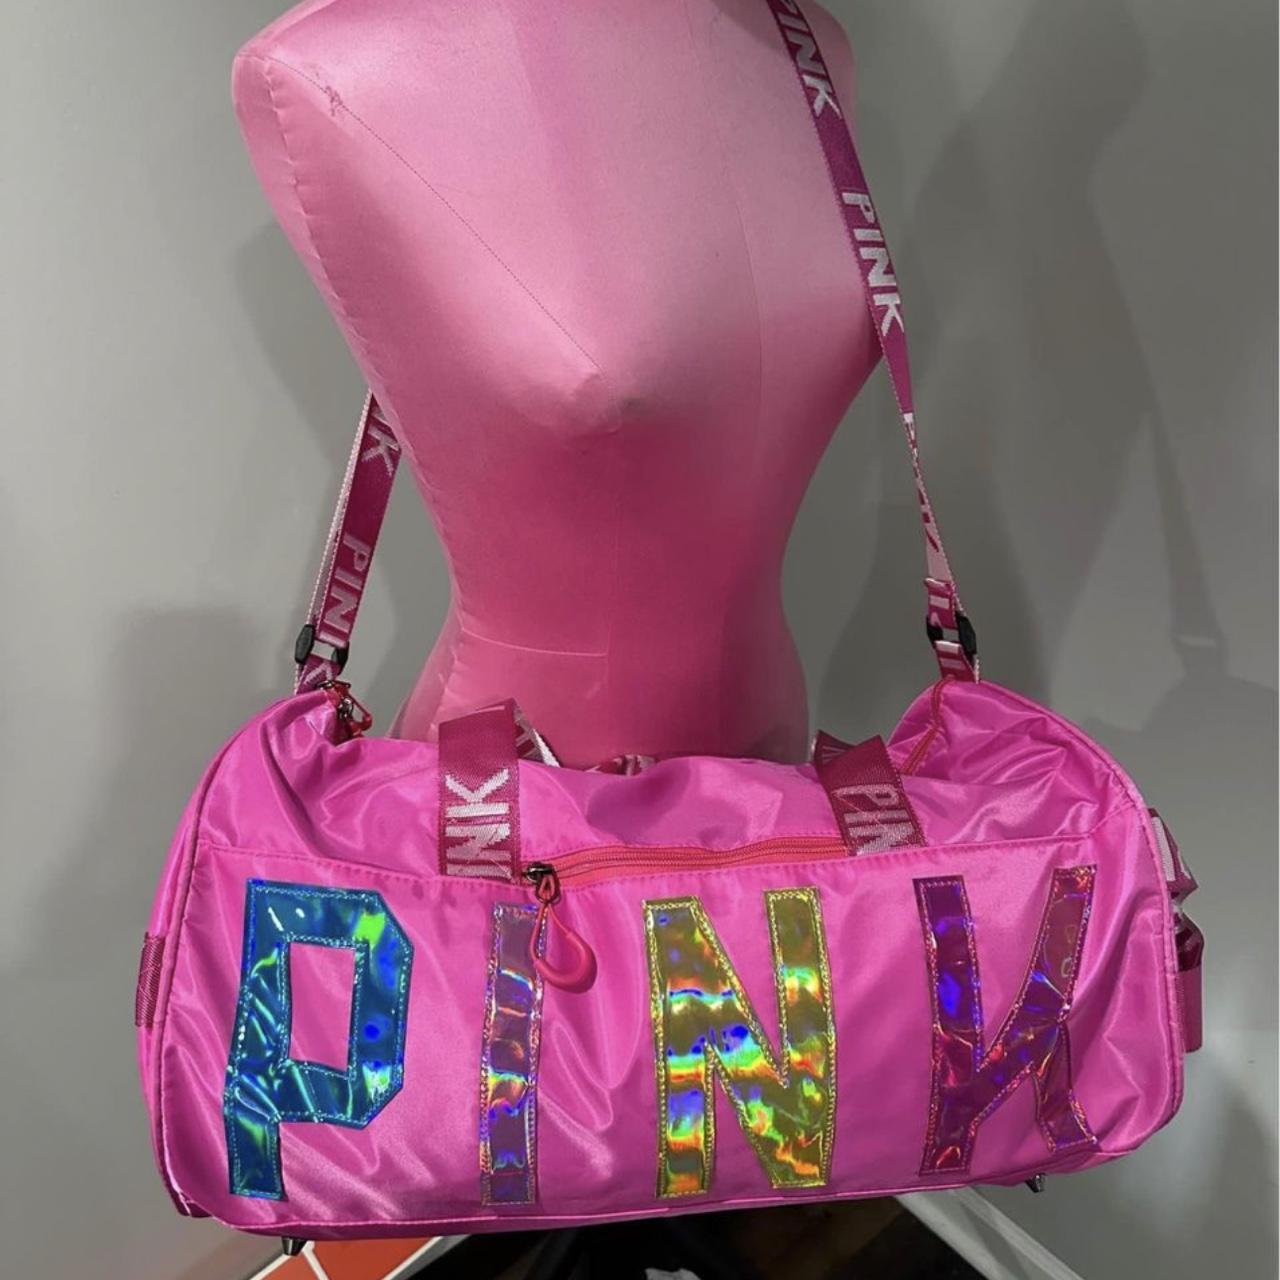 Victoria's Secret Pink Women's Crossbody Bags - Pink